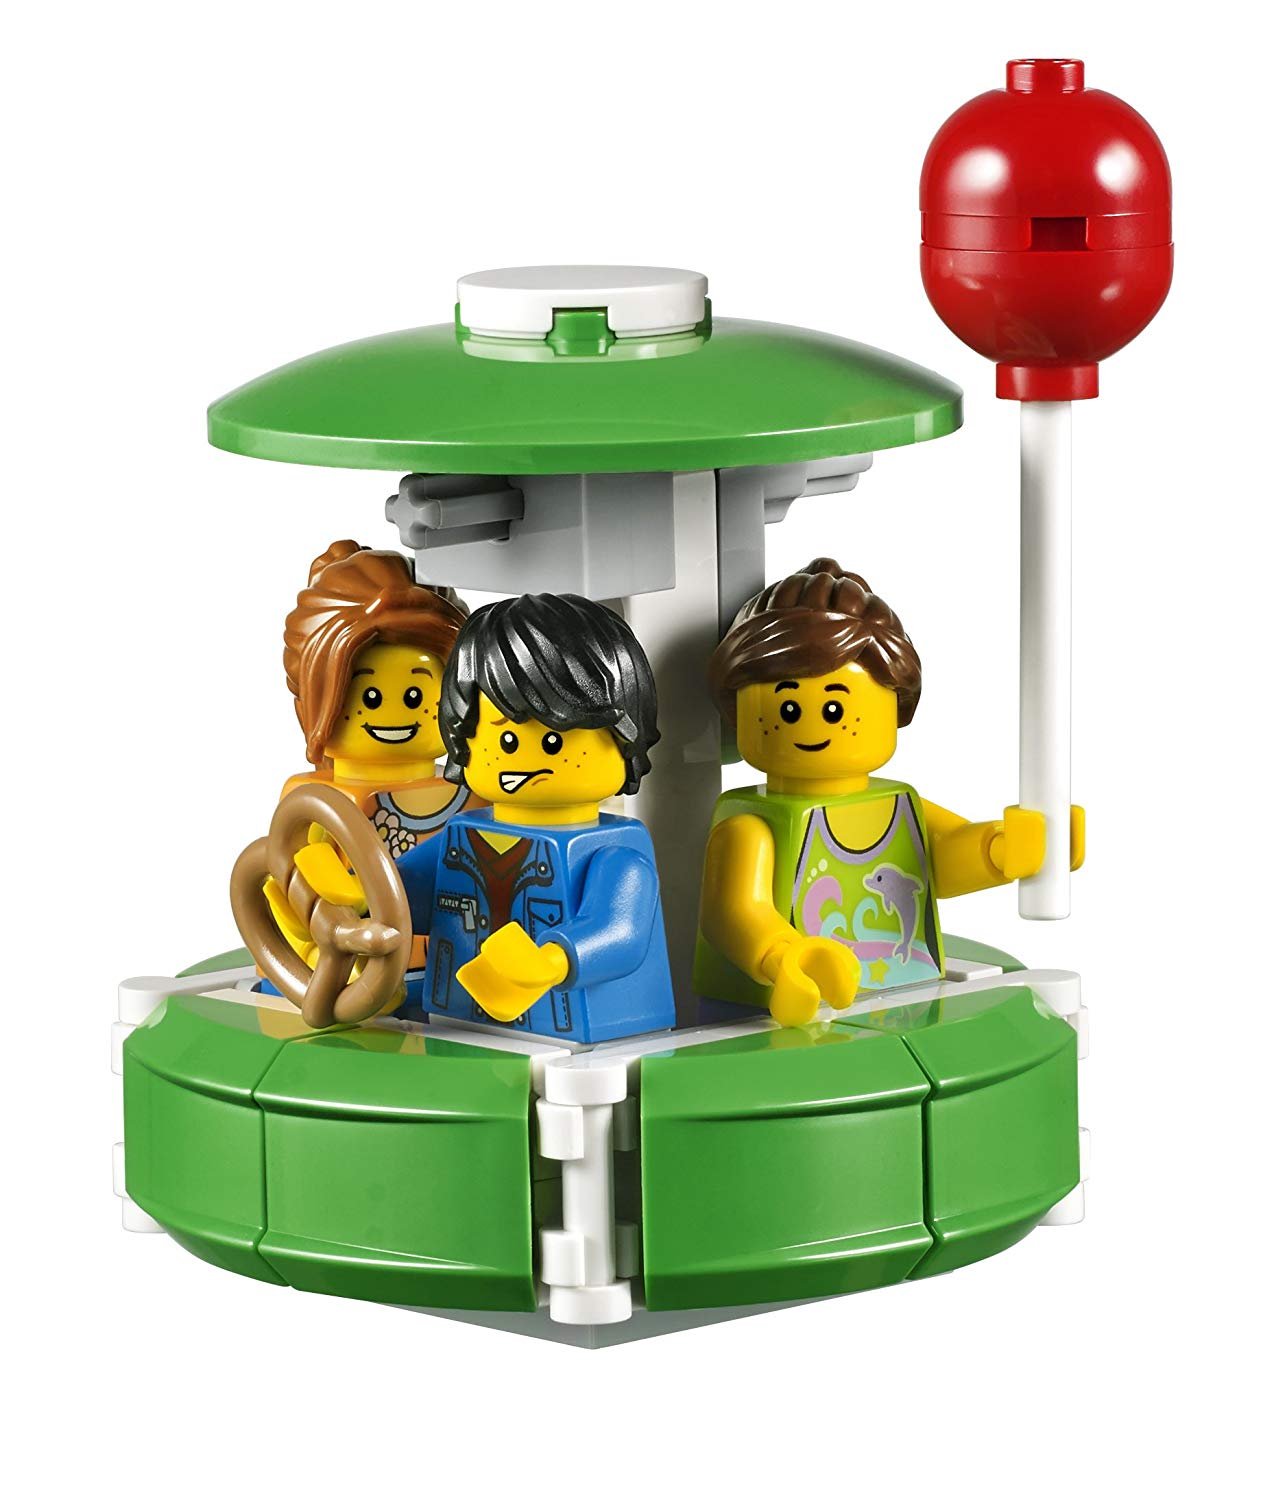 LEGO Creator Ferris Wheel - 10247